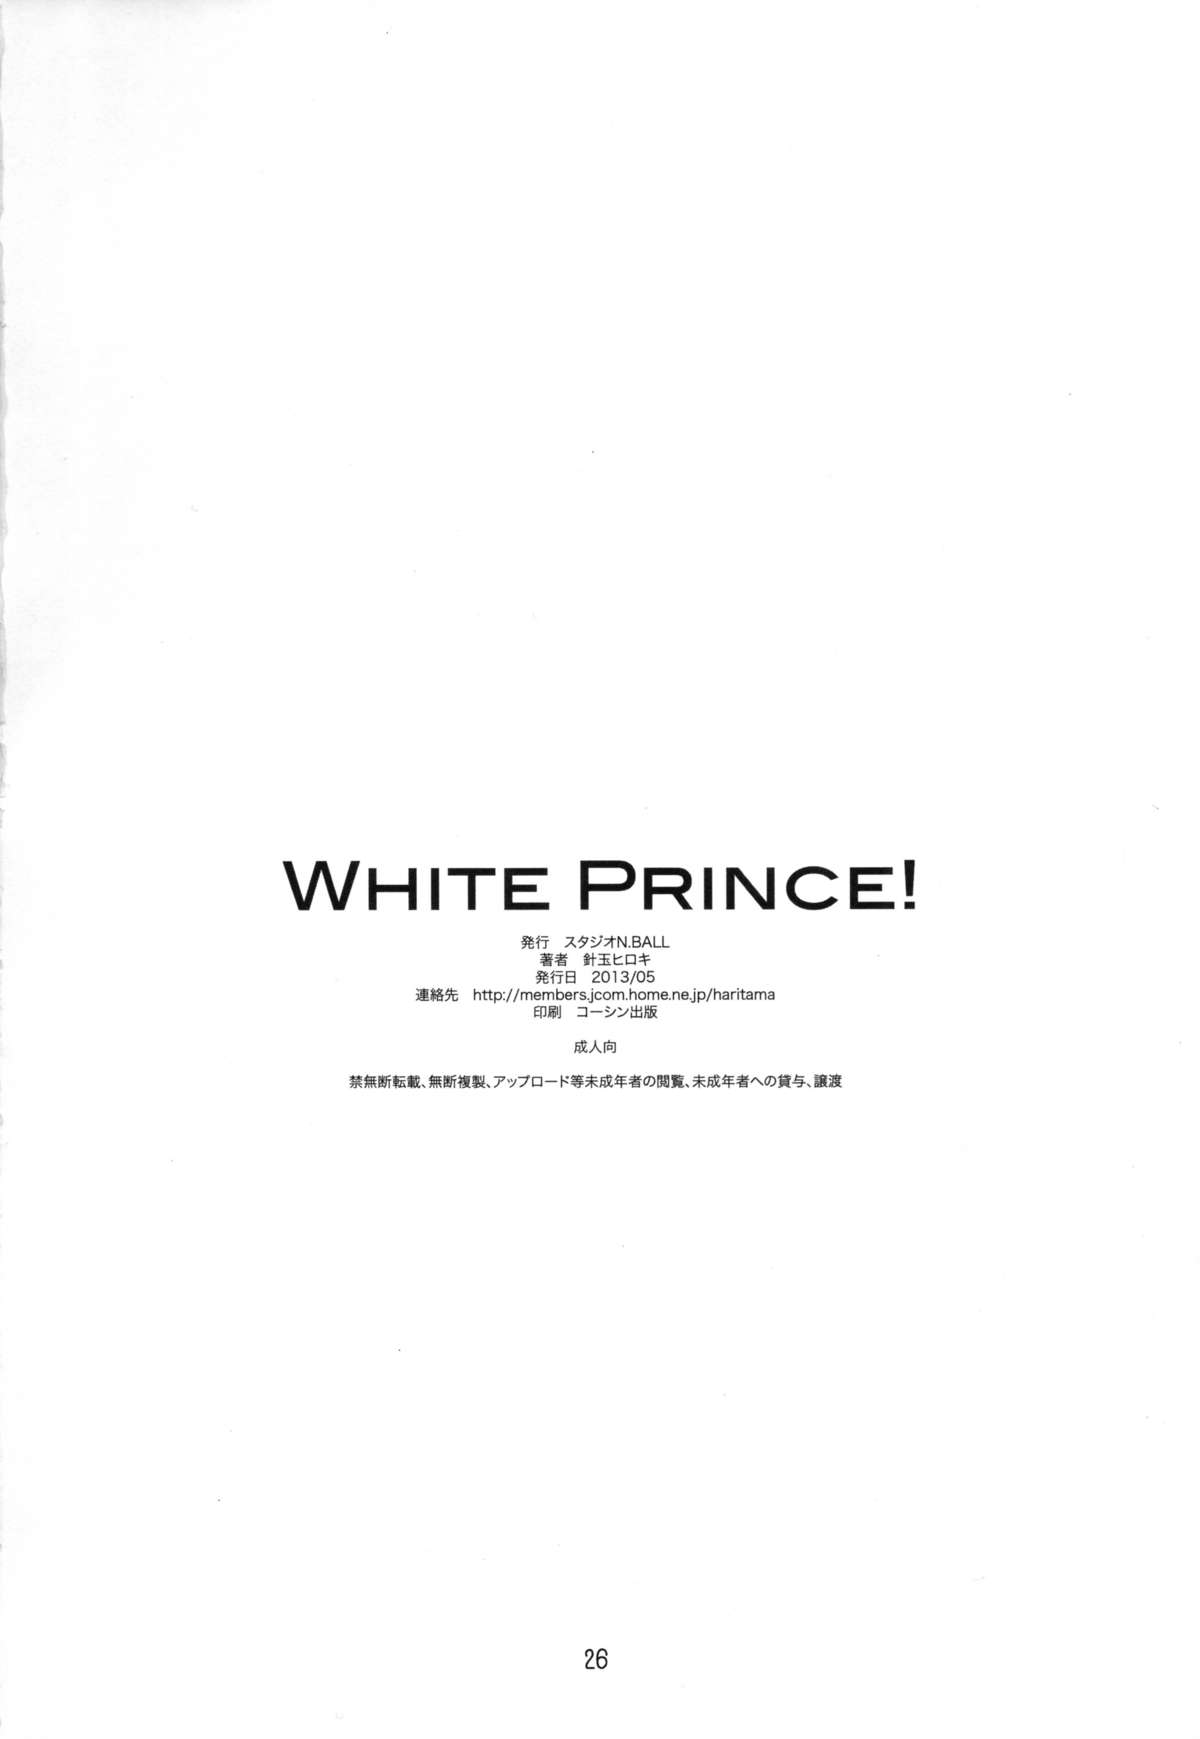 [スタジオN.BALL (針玉ヒロキ)] WHITE PRINCE! (アイドルマスター)